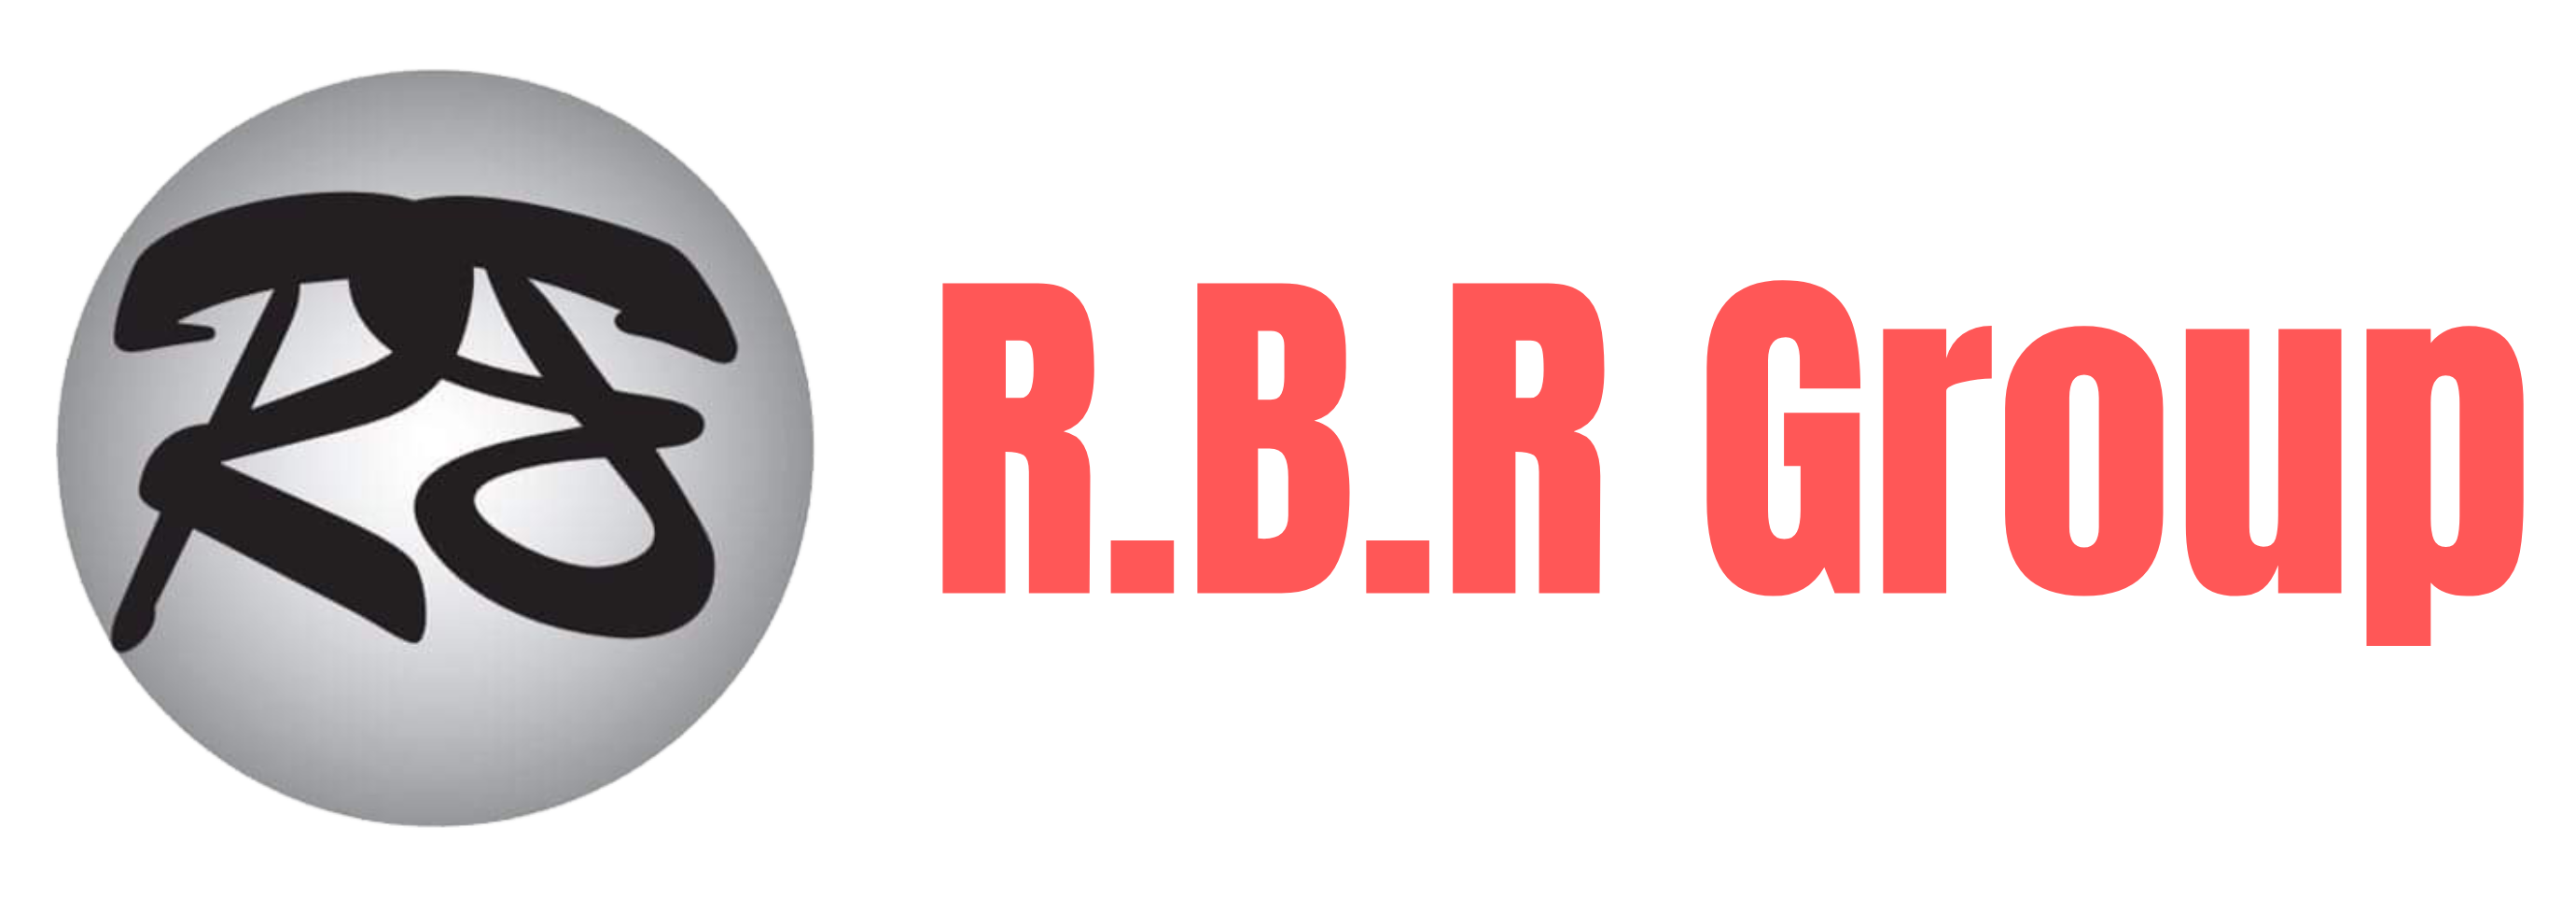 R.B.R Group